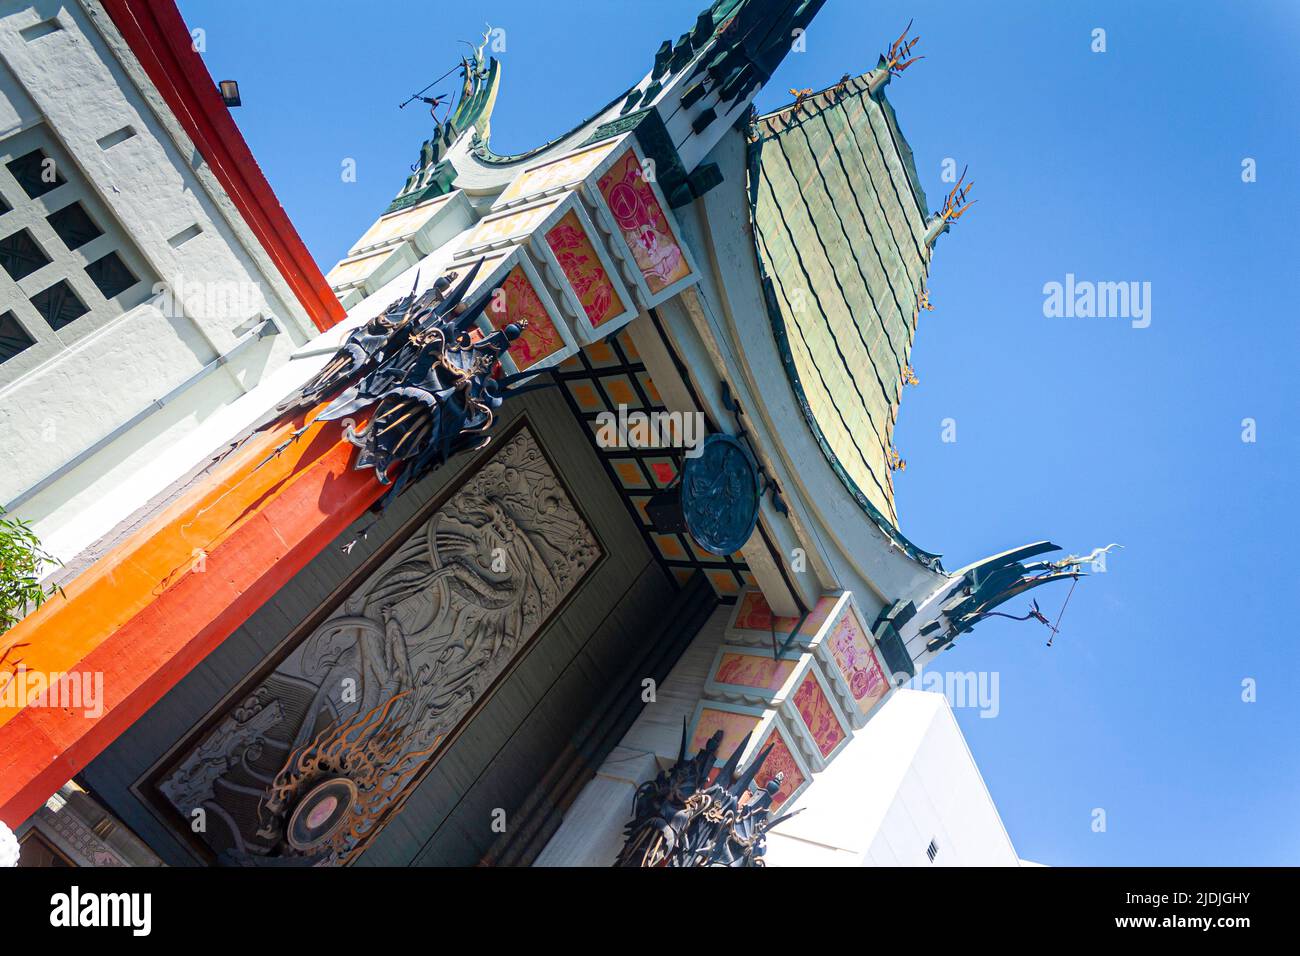 Le théâtre chinois de Grauman sur le Hollywood Walk of Fame Banque D'Images